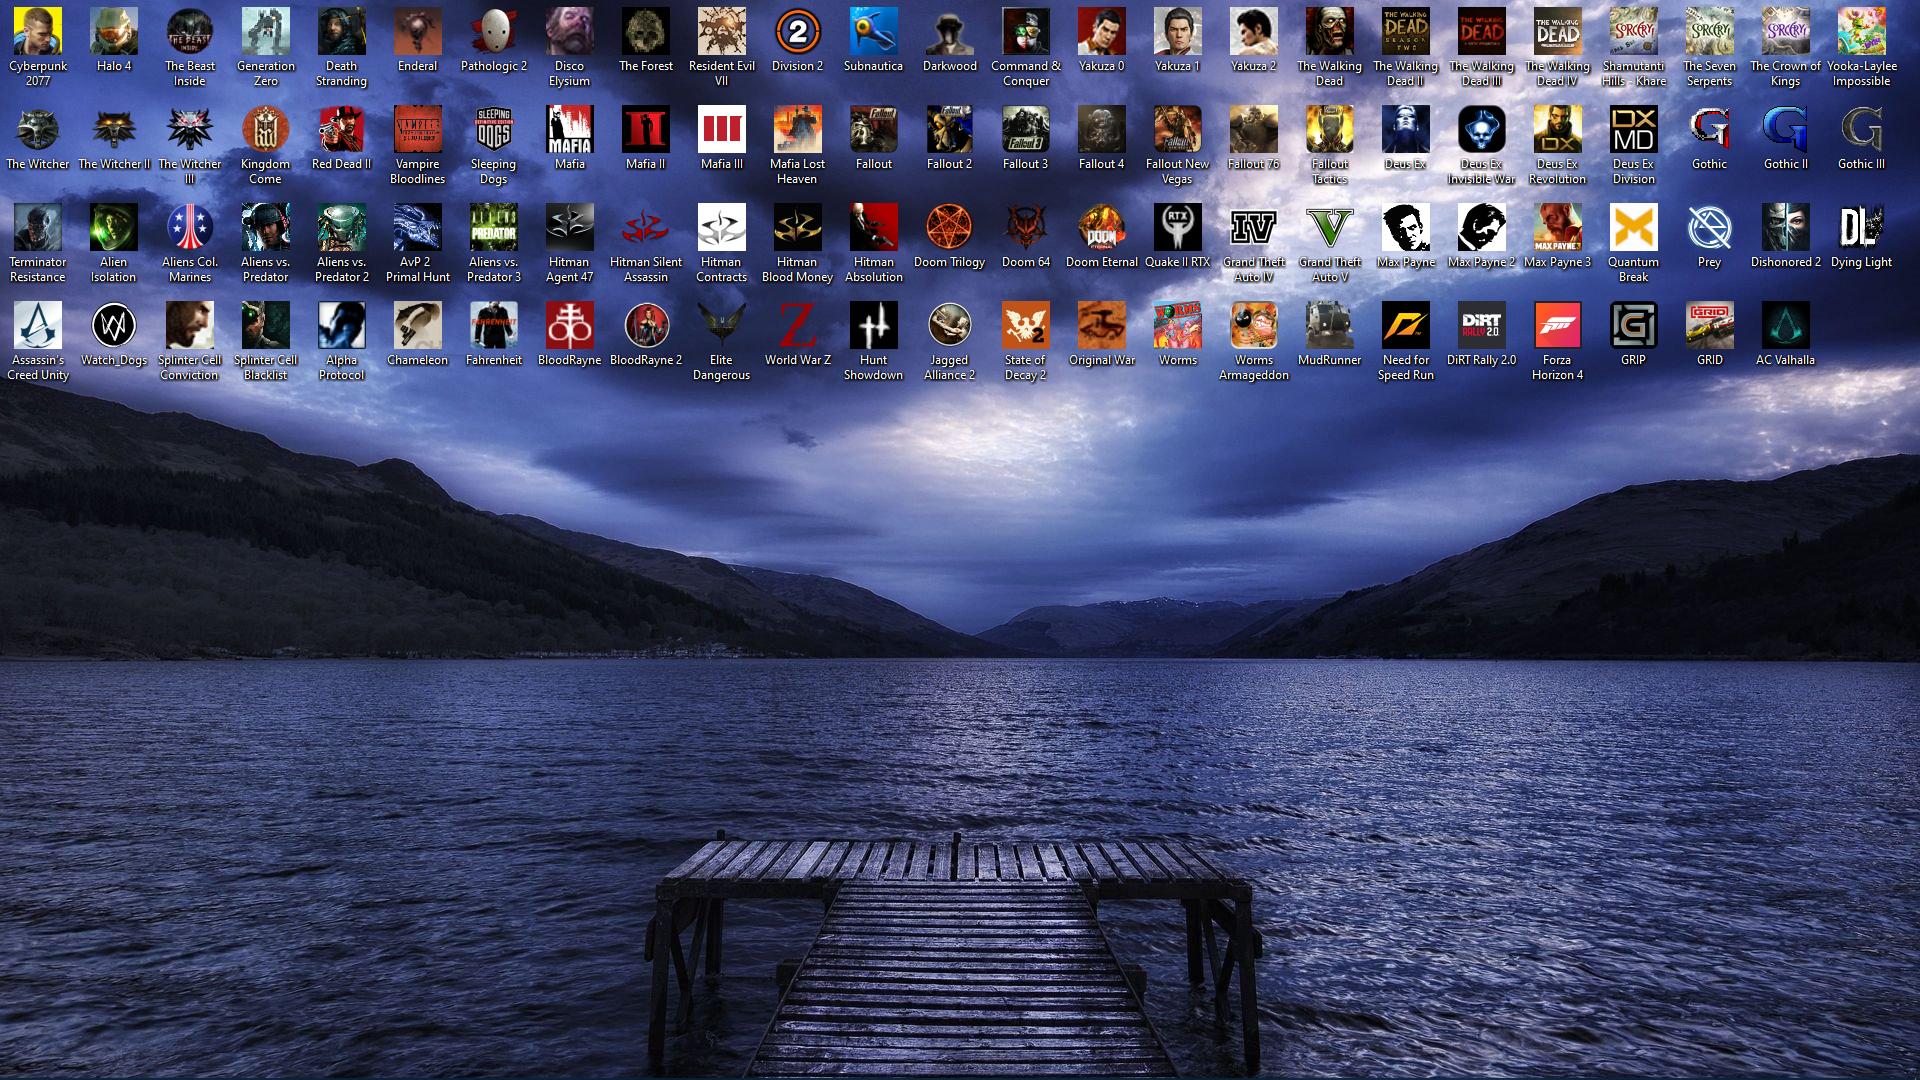 desktopscreenshot2020upkl2.png